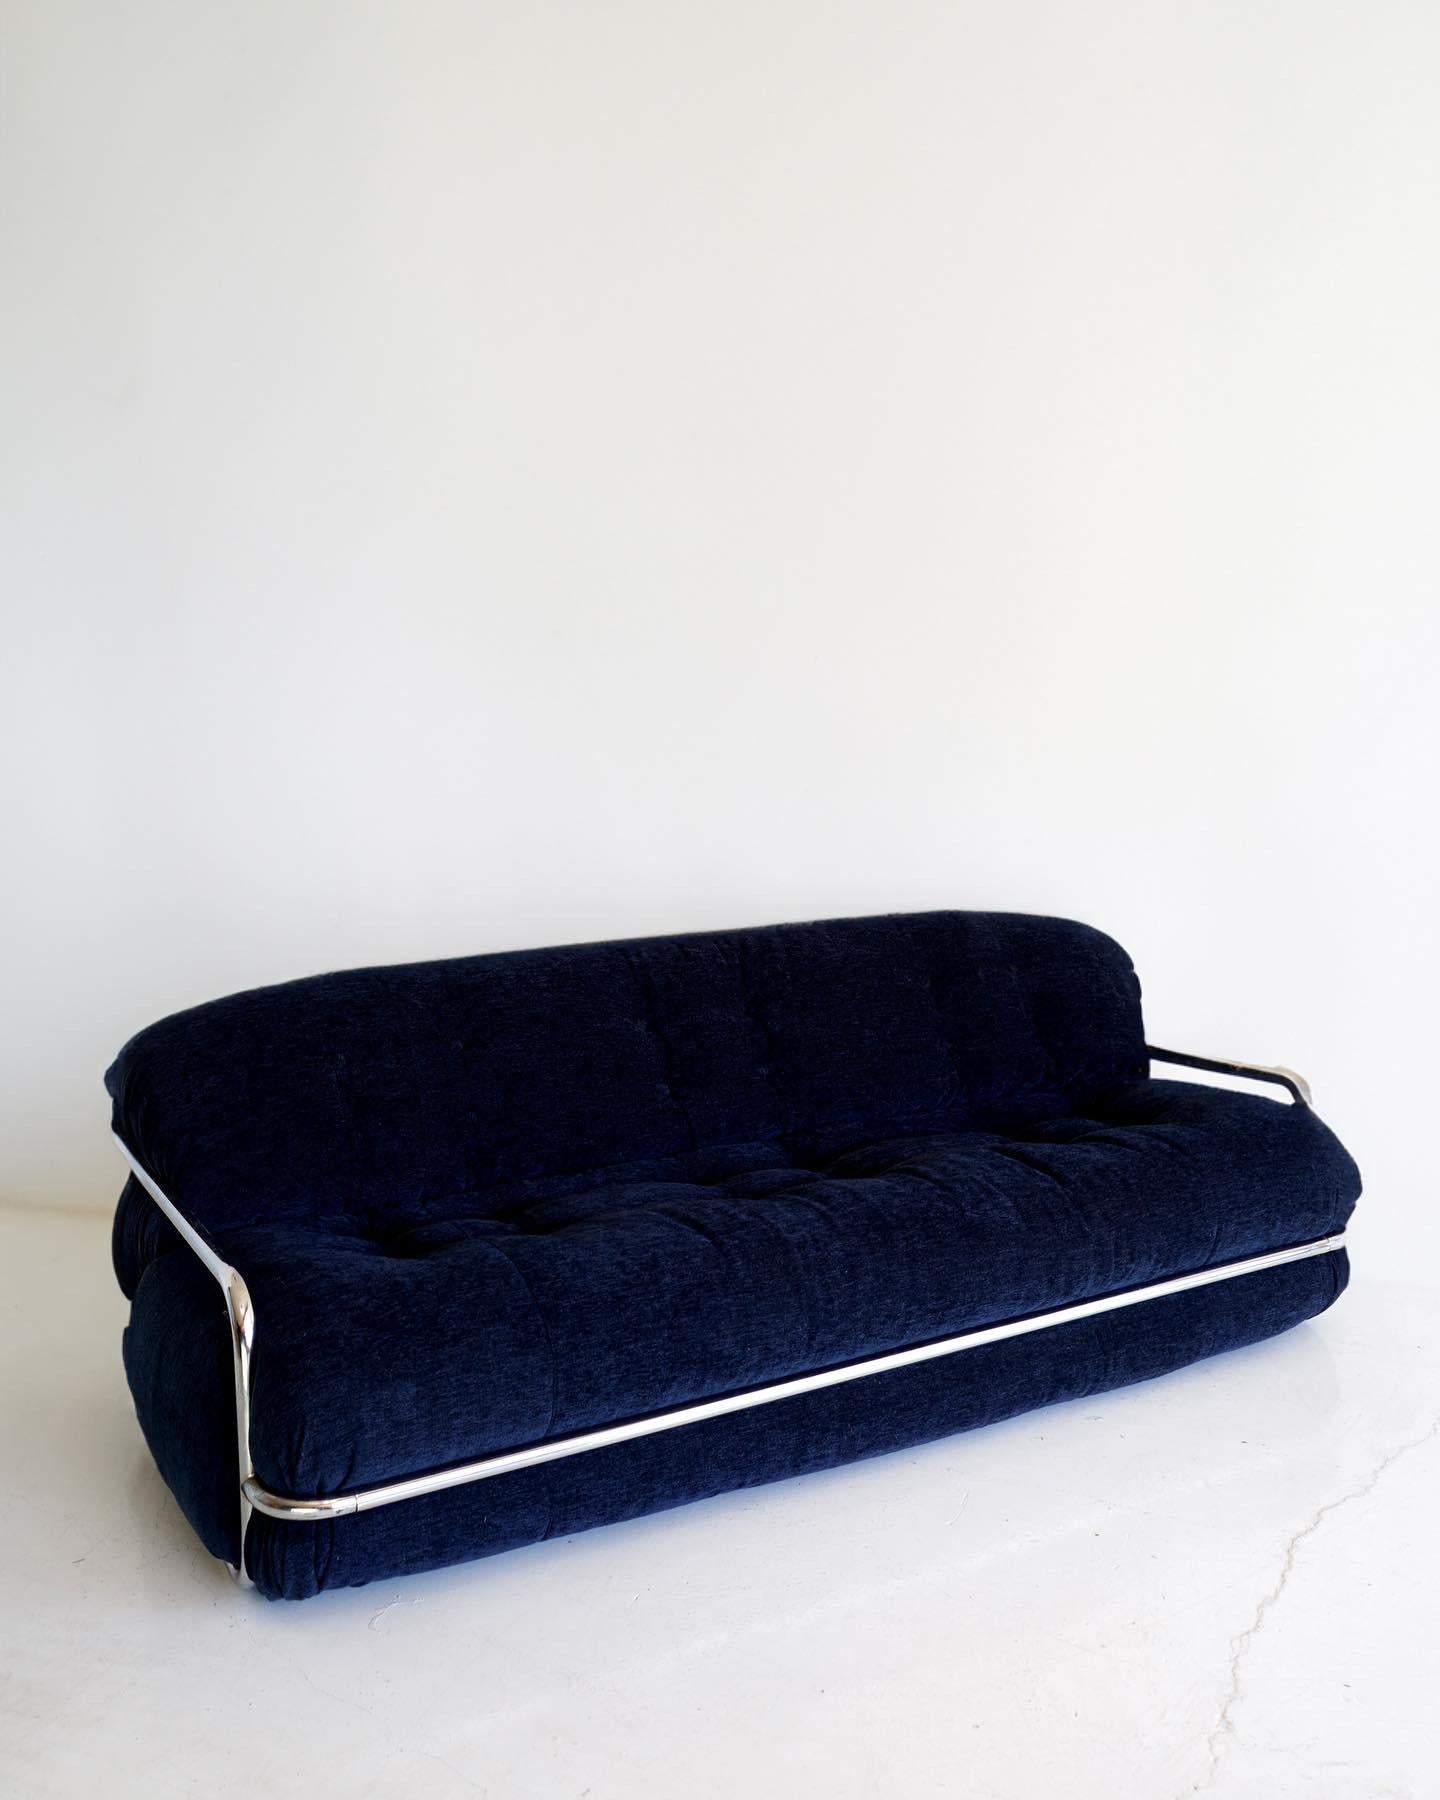 Niedriges, geschwungenes und unendlich verführerisches 3-Sitzer-Sofa von Mario Sabot. Dieses aus allen Blickwinkeln atemberaubende, selten zu sehende Modell wurde neu mit einem wunderschönen tiefblauen, gewebten Samt bezogen und ist in